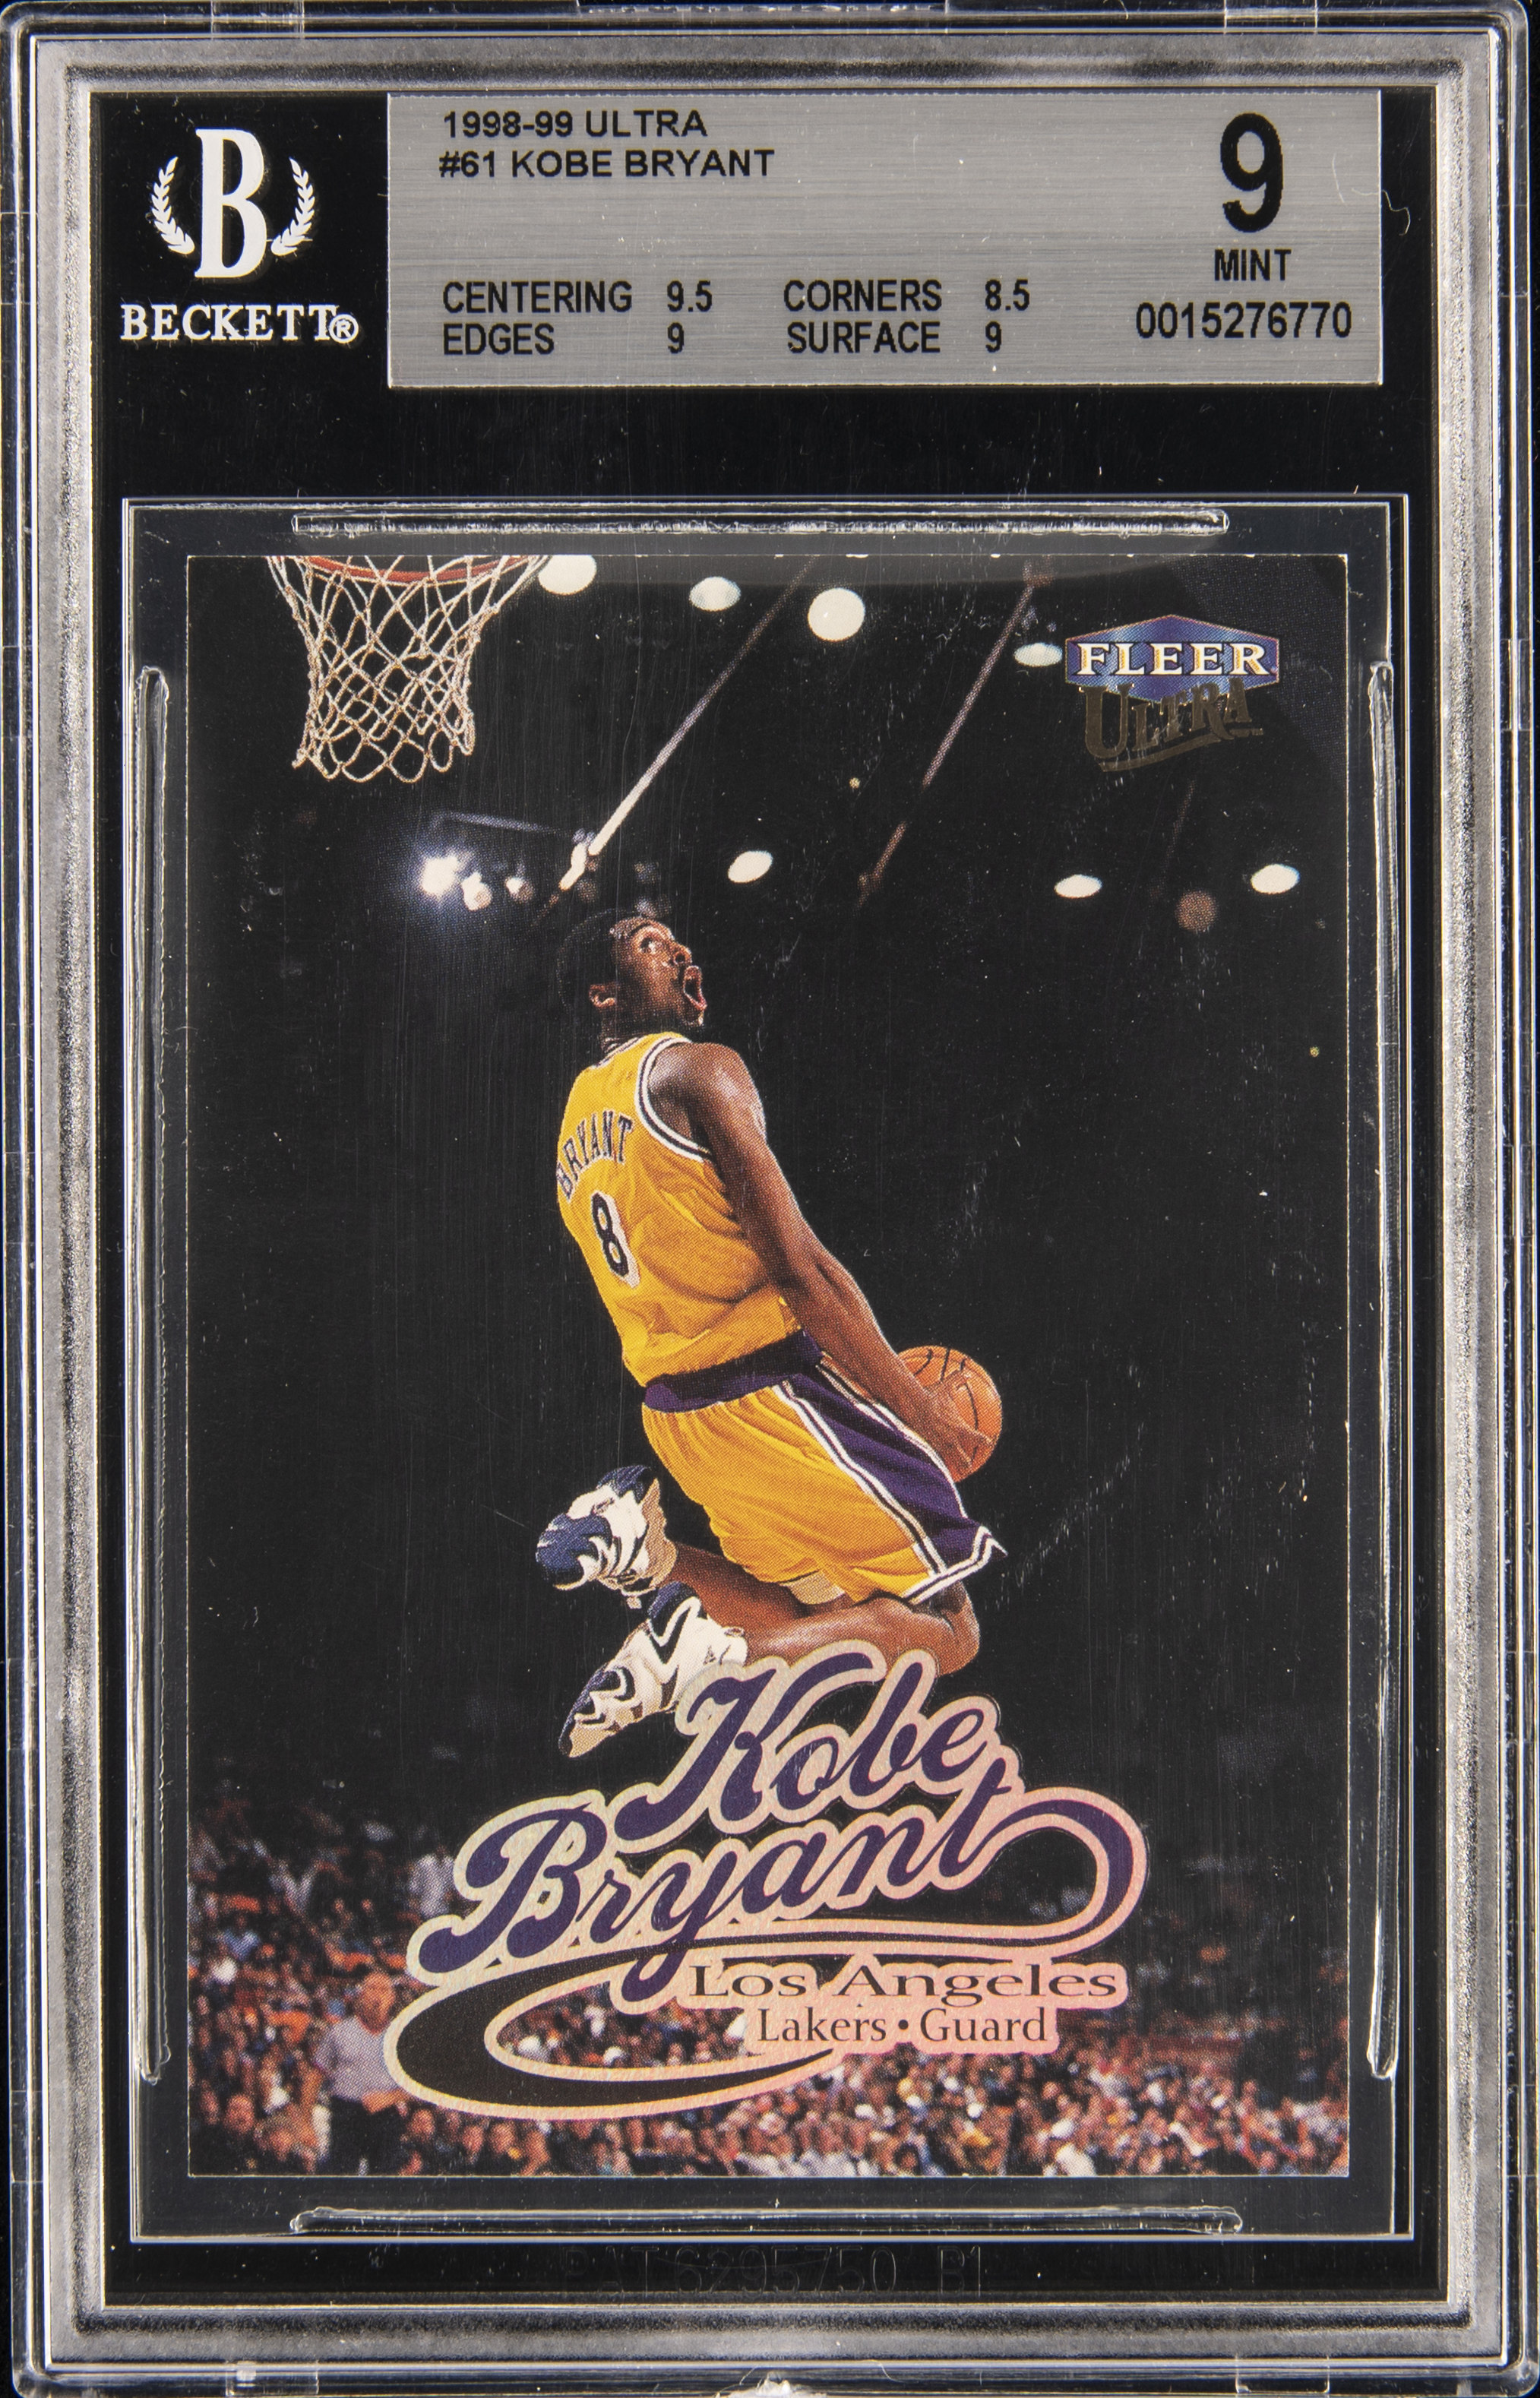 1998-99 Fleer Ultra #61 Kobe Bryant – BGS MINT 9